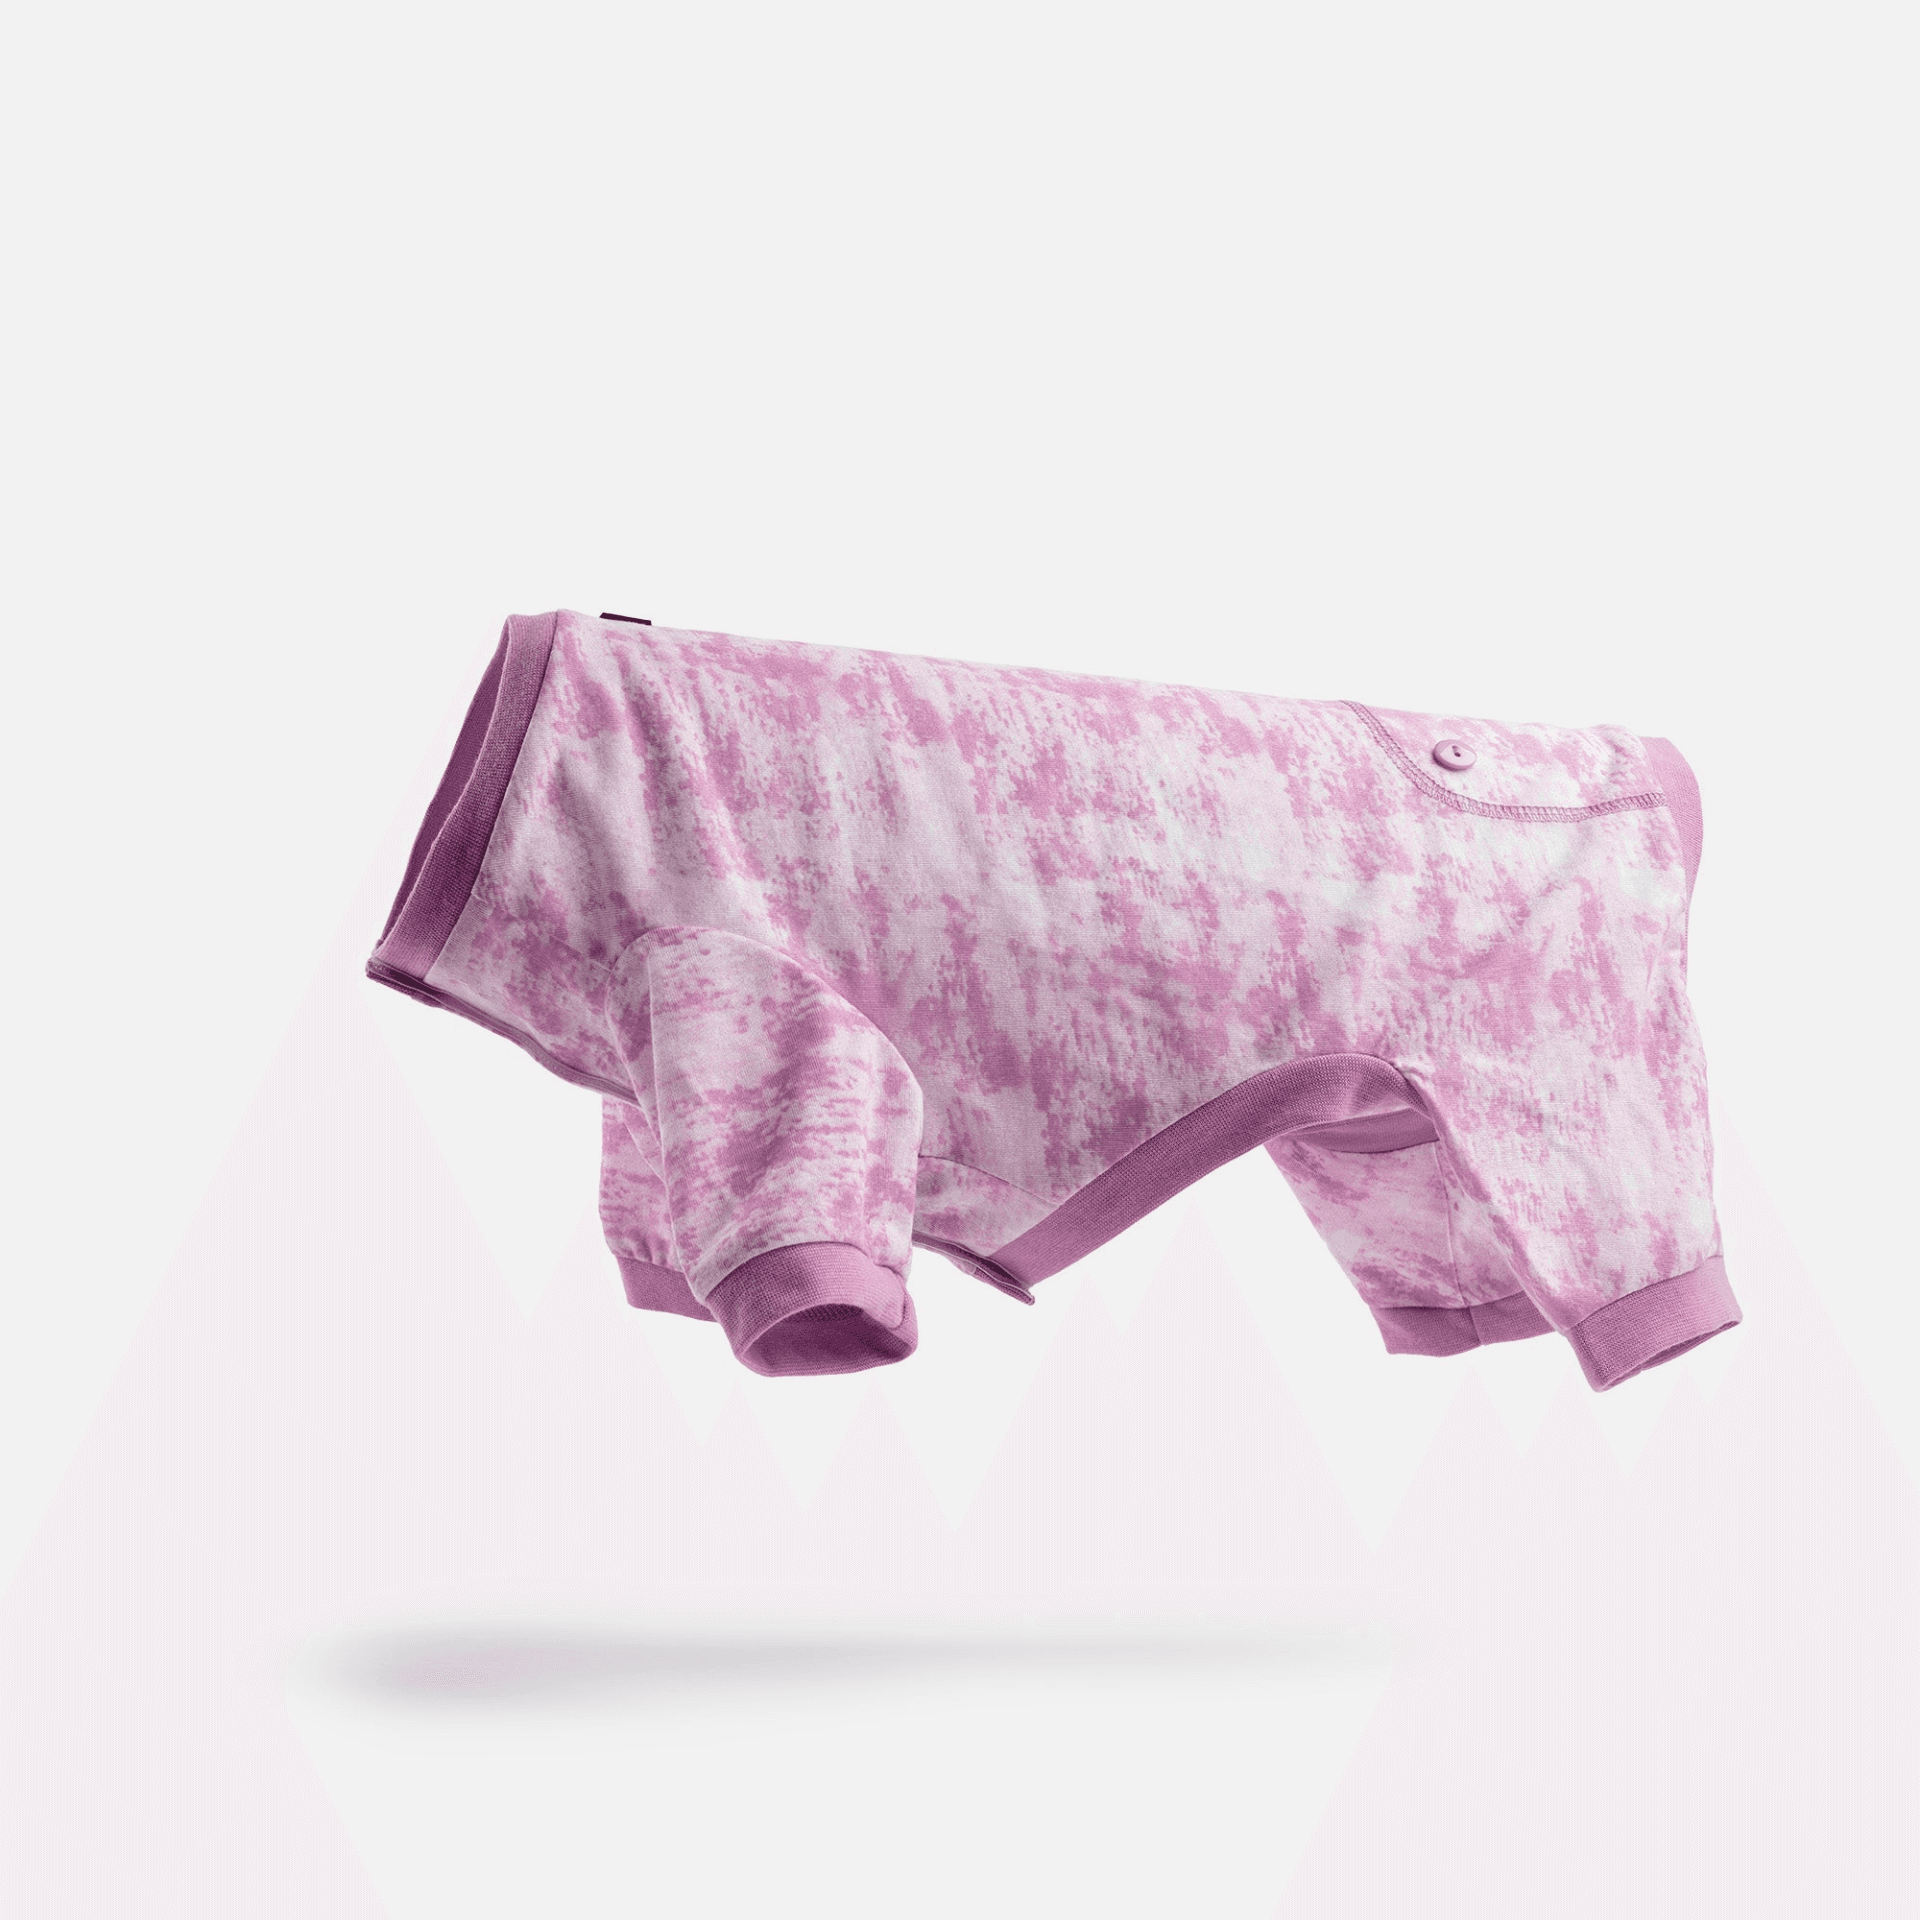 Matching Dog And Owner Pajamas Bundle - Pink Tie Dye